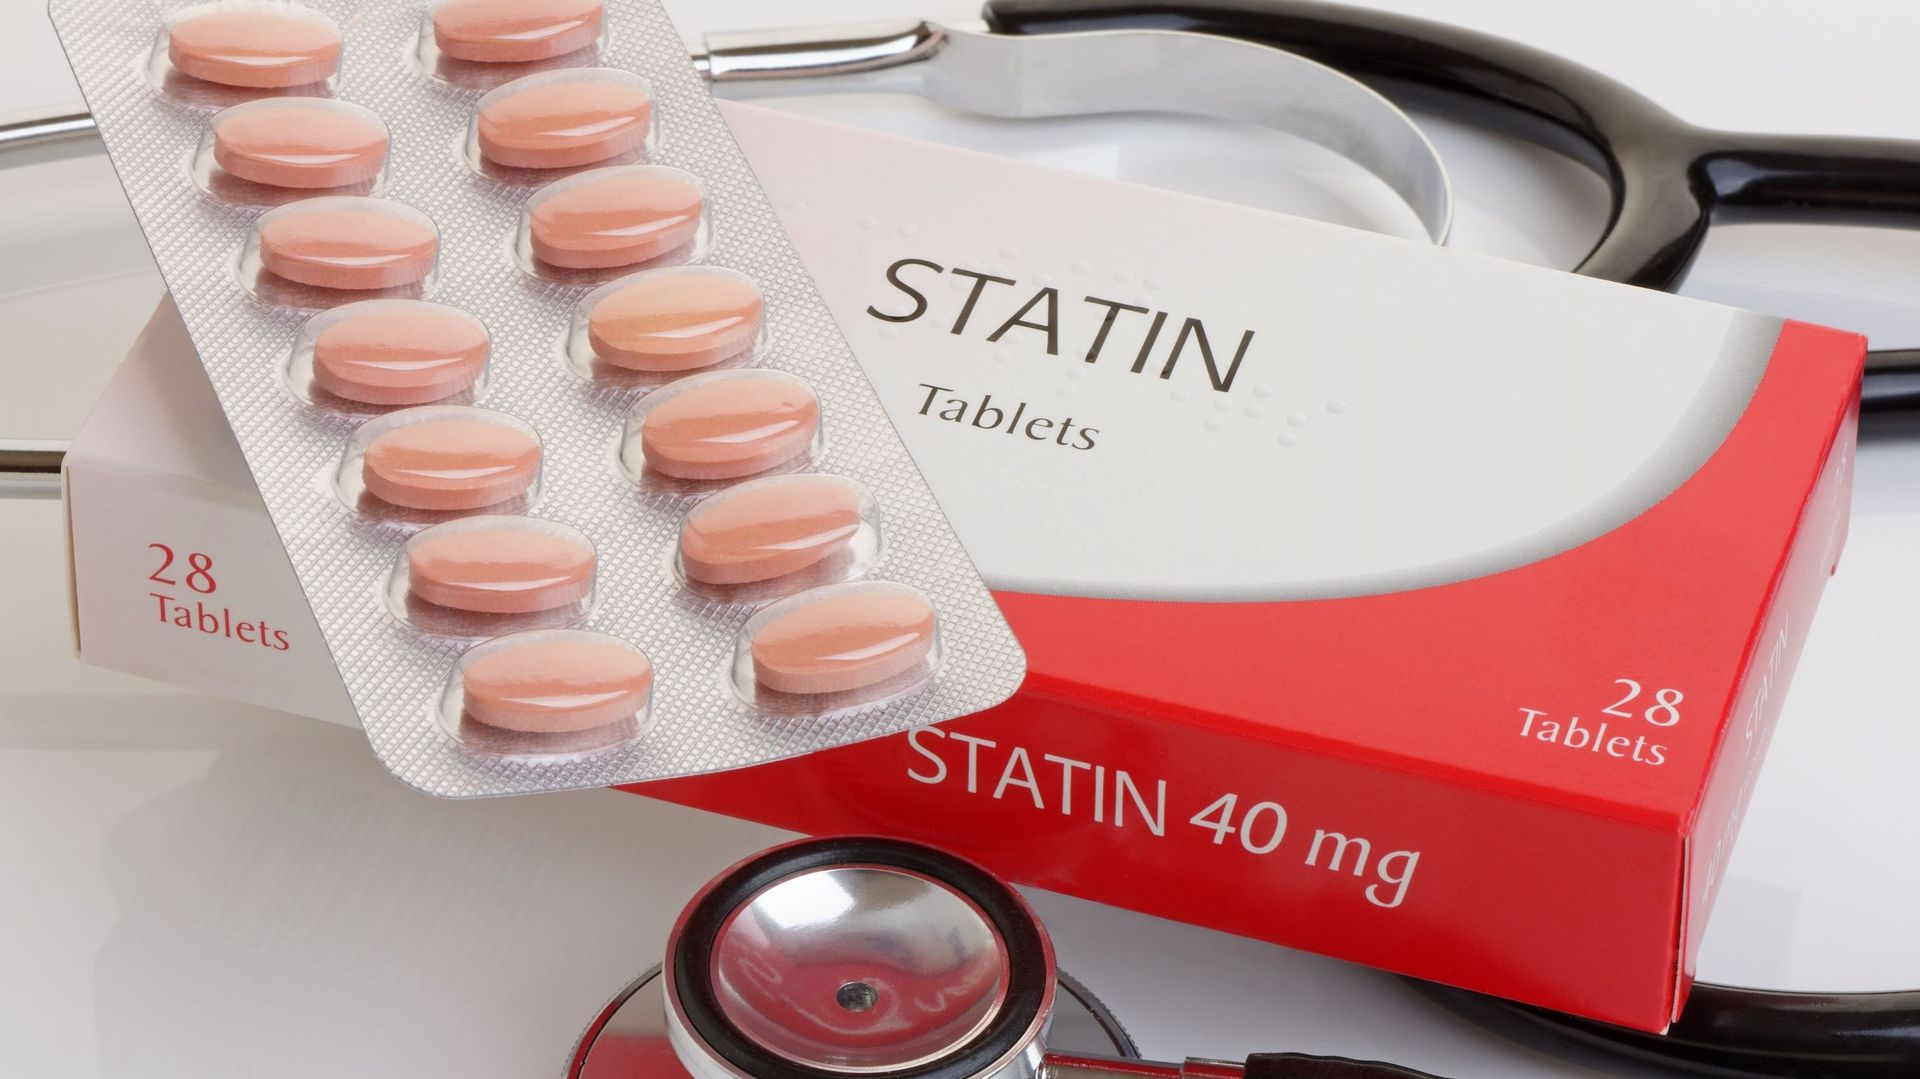 Les statines prescrites pour traiter le cholestérol représentent ...